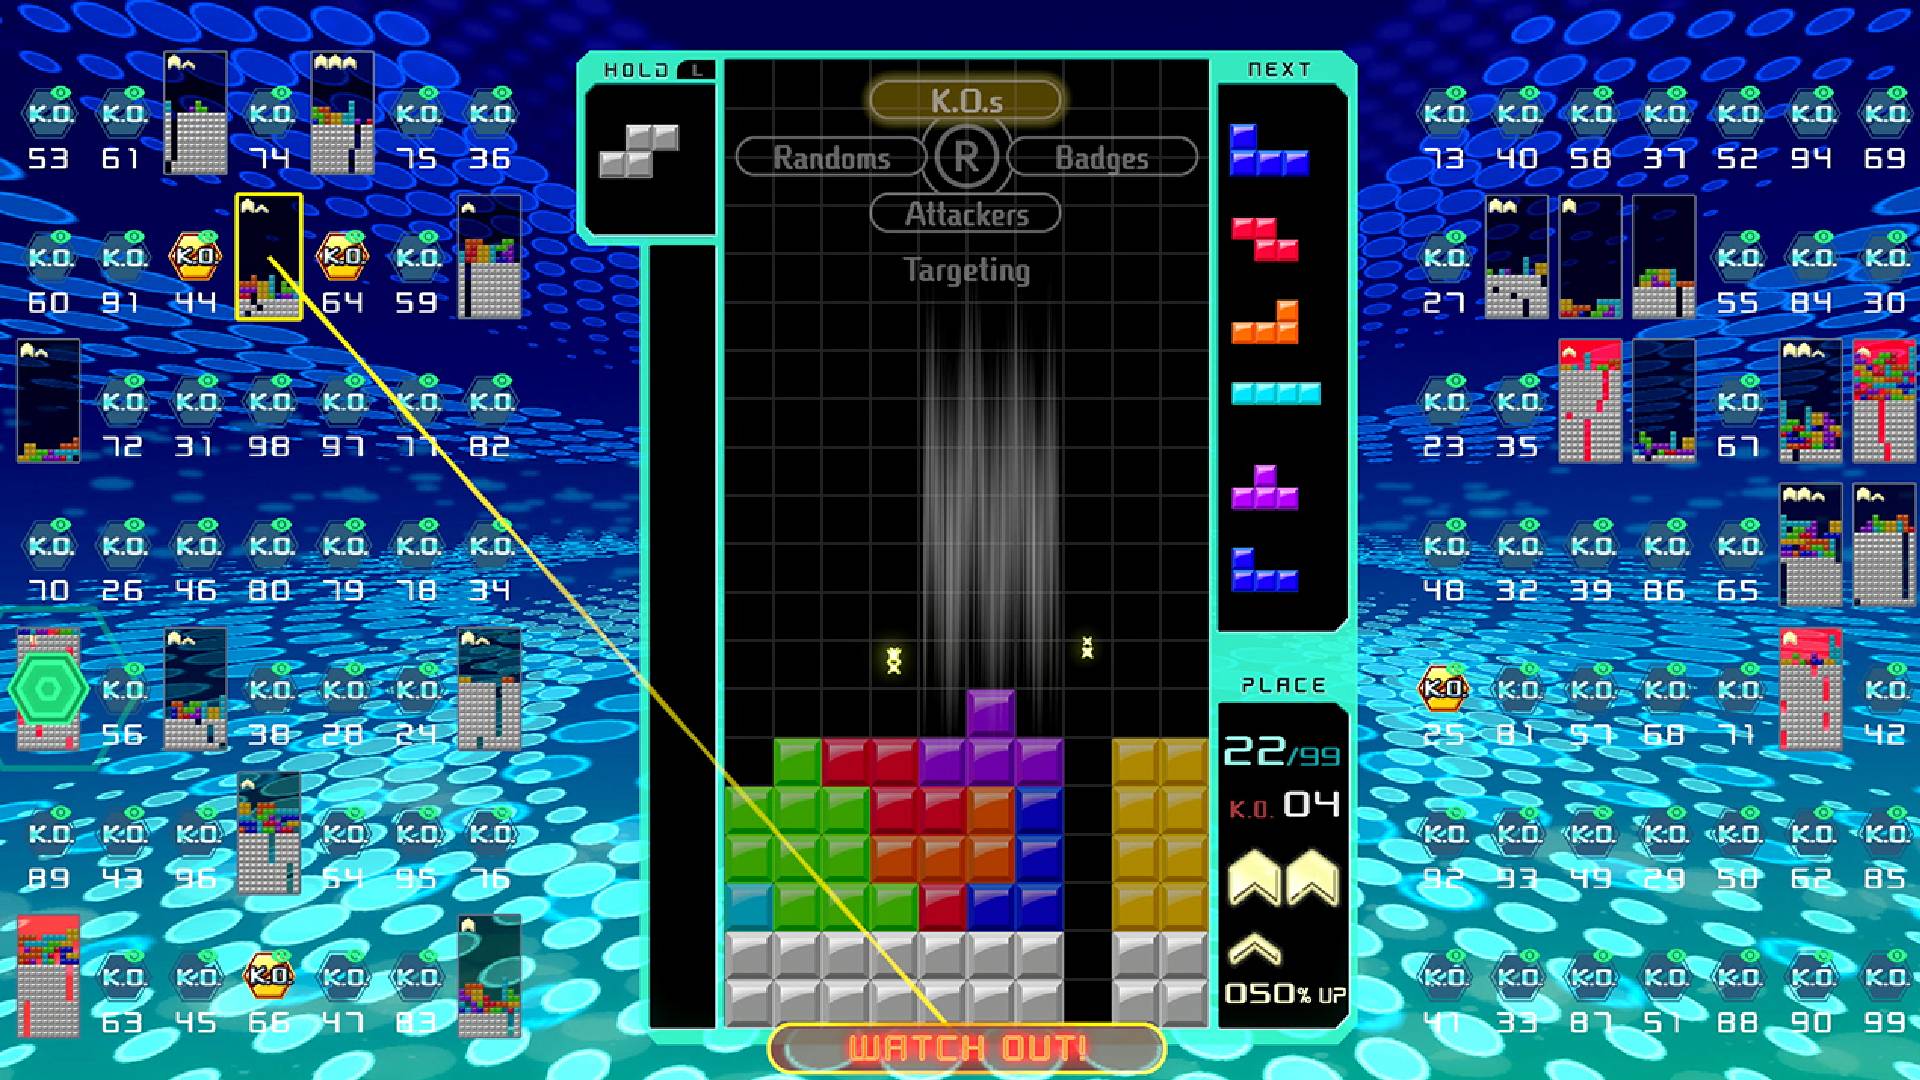 Une partie de Tetris est en cours tandis que 98 autres jeux de Tetris sont diffusés autour de l'écran principal